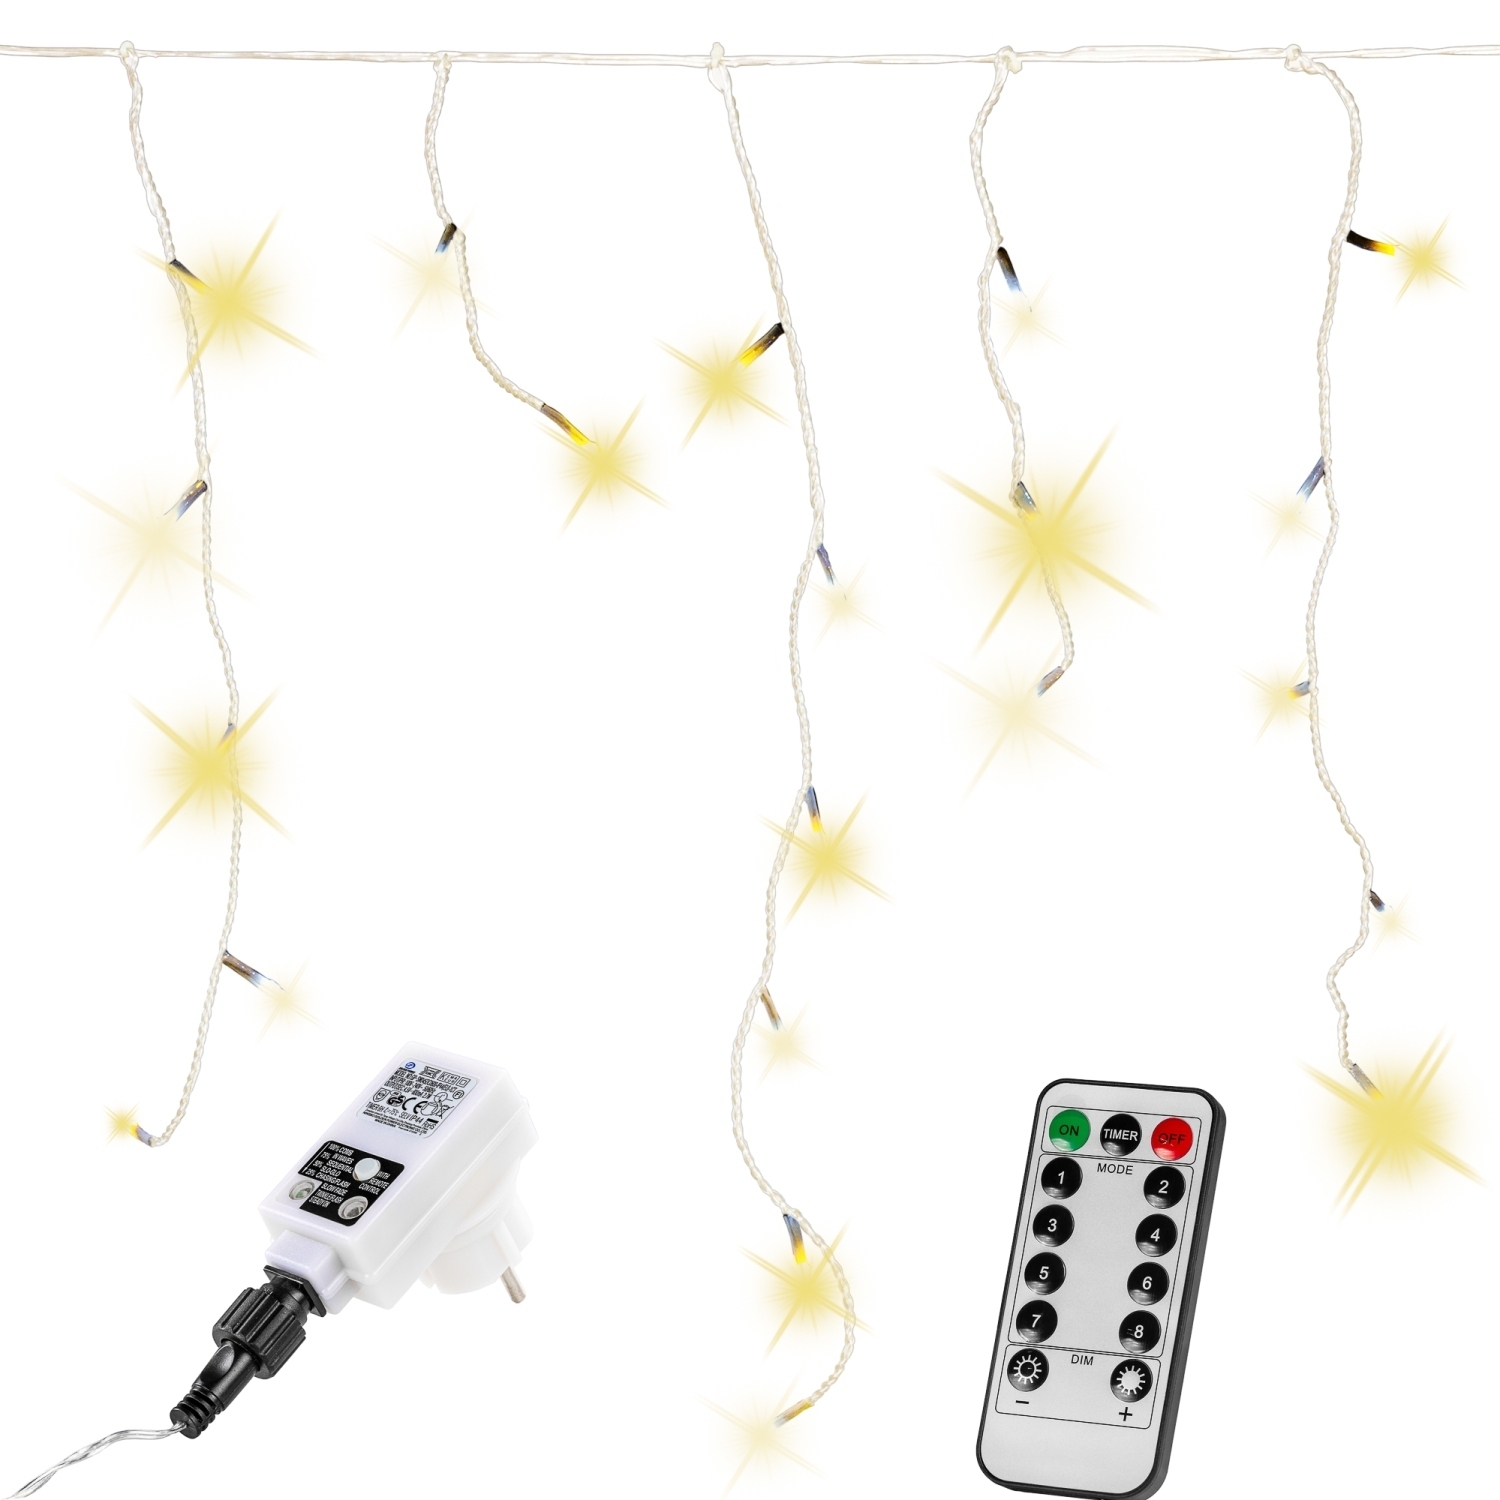 Lichtgordijn – Ijspegelverlichting – Voor Binnen en Buiten – Met afstandsbediening – 60 m – Warm wit